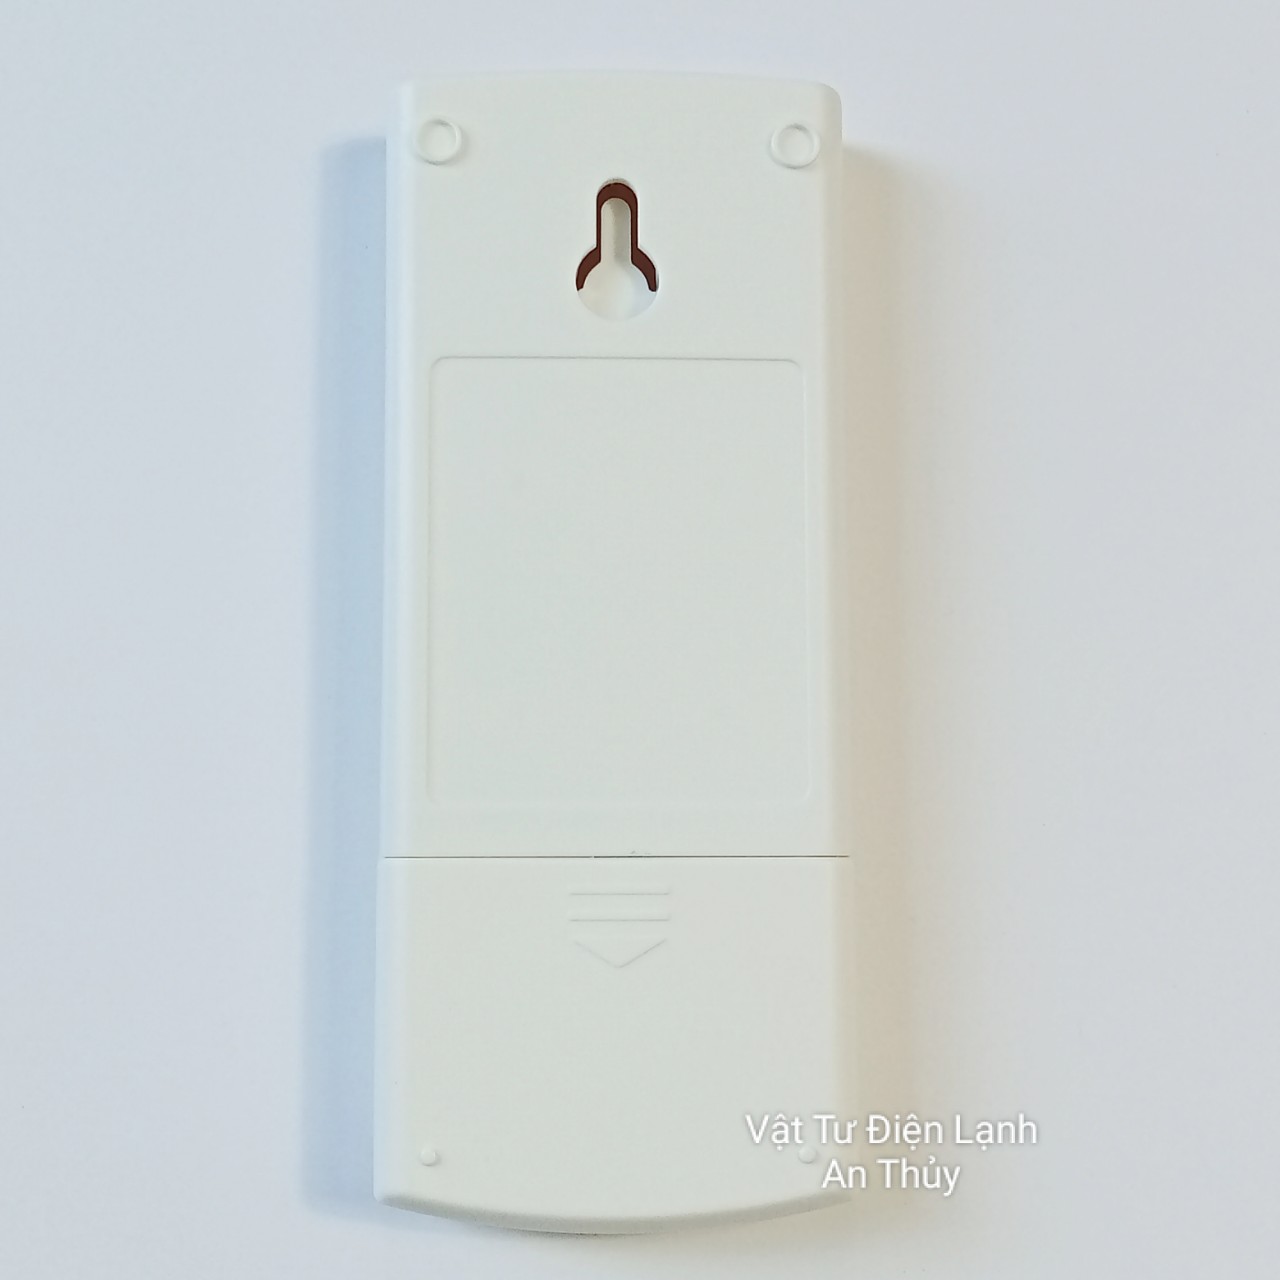 Remote máy lạnh SHARP CLEAN nút nguồn đỏ ECO xanh đọt chuối - Điều khiển máy lạnh SHARP - Remote điều hòa SHARP